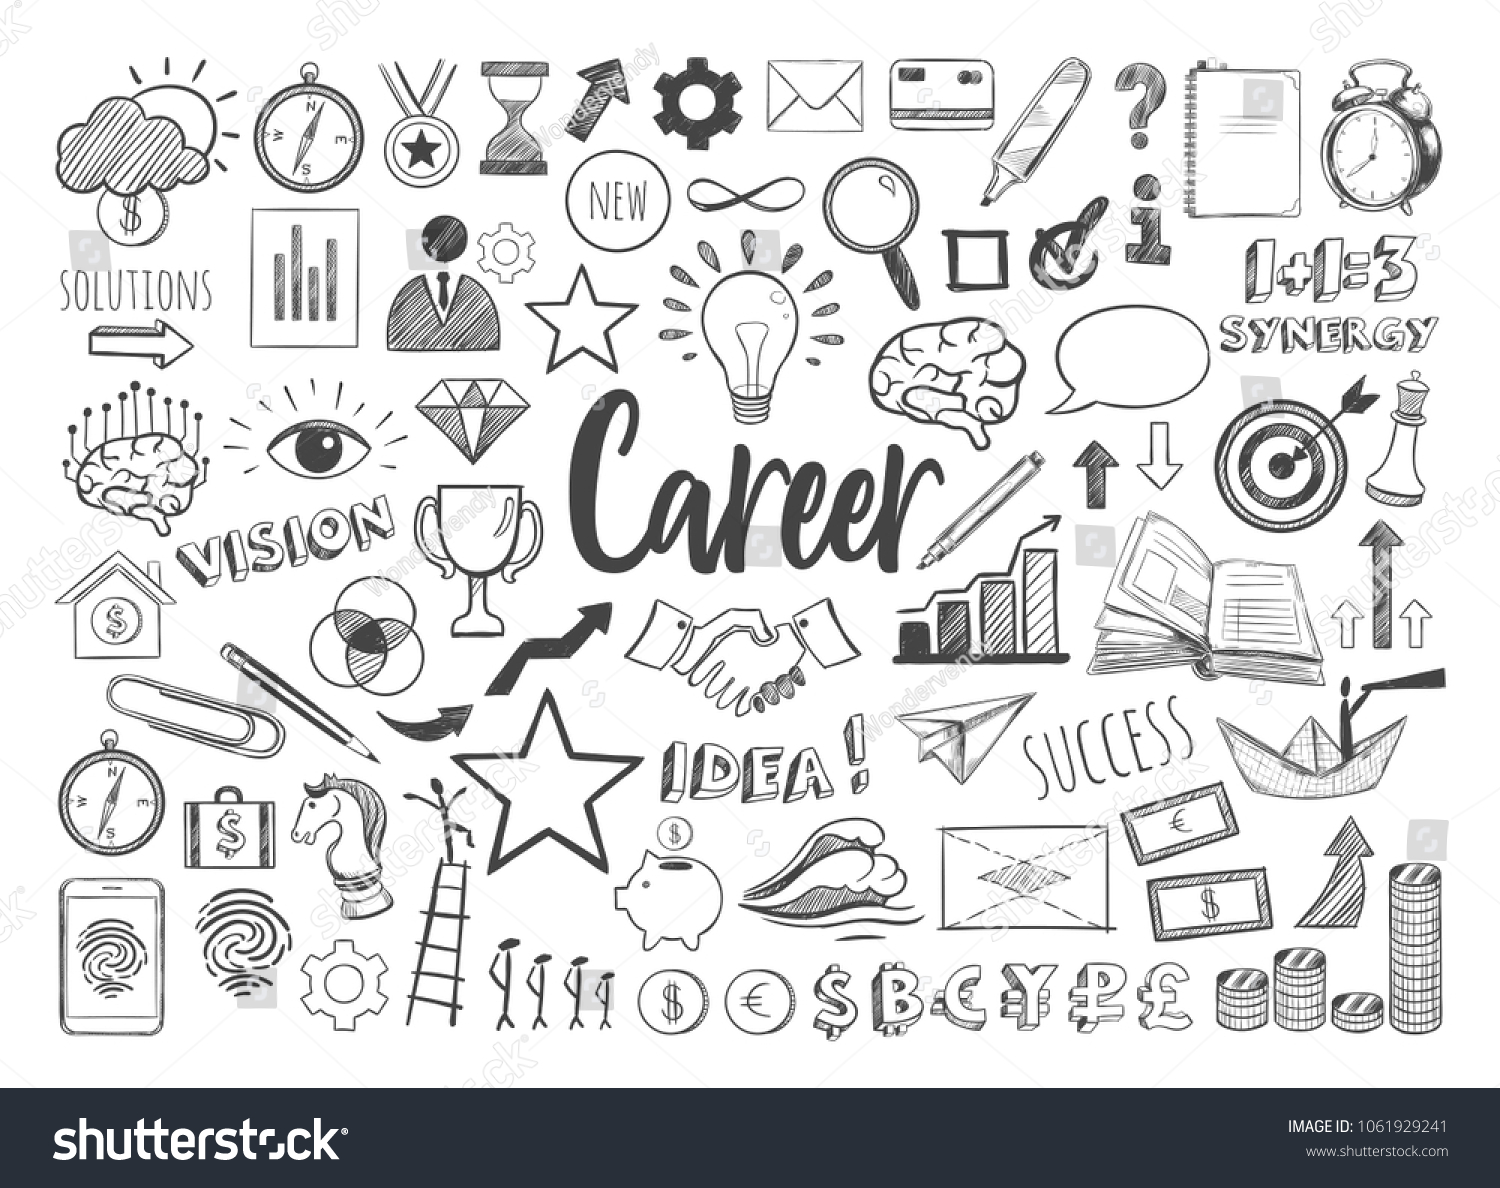 24,788 Career doodle Images, Stock Photos & Vectors Shutterstock